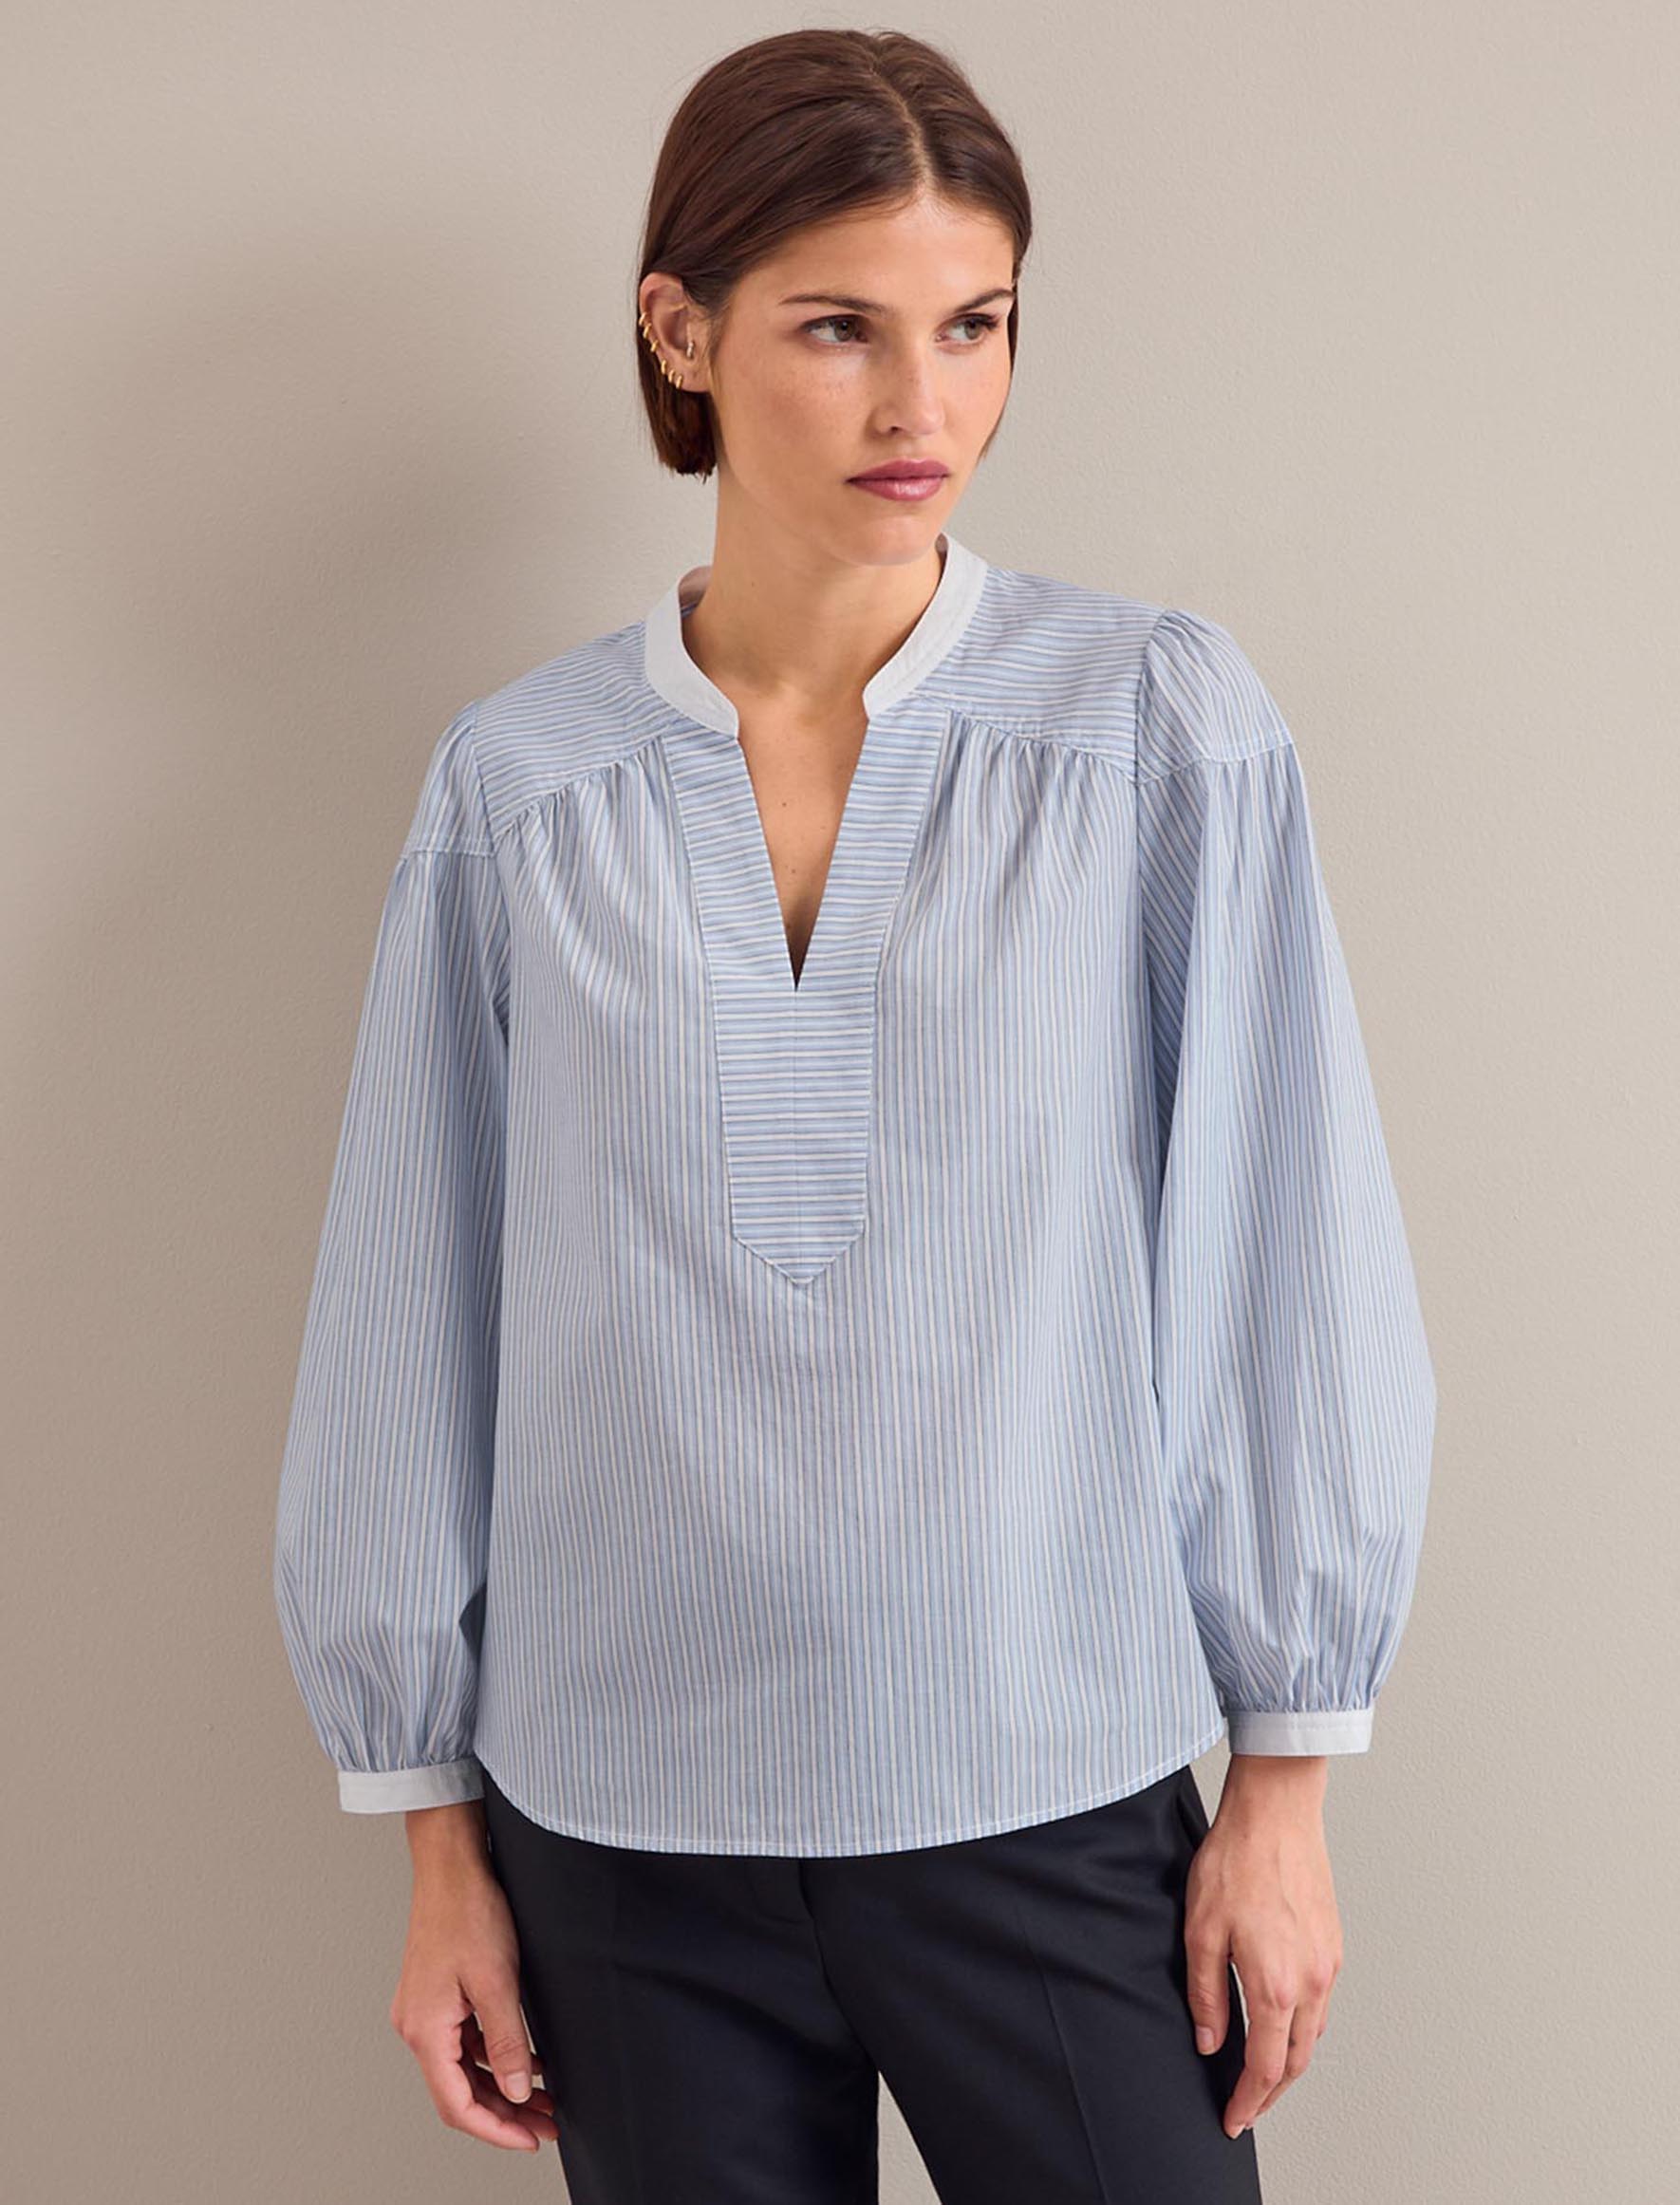 Cefinn Erica Organic Cotton Shirt - Mid Stripe Blue White